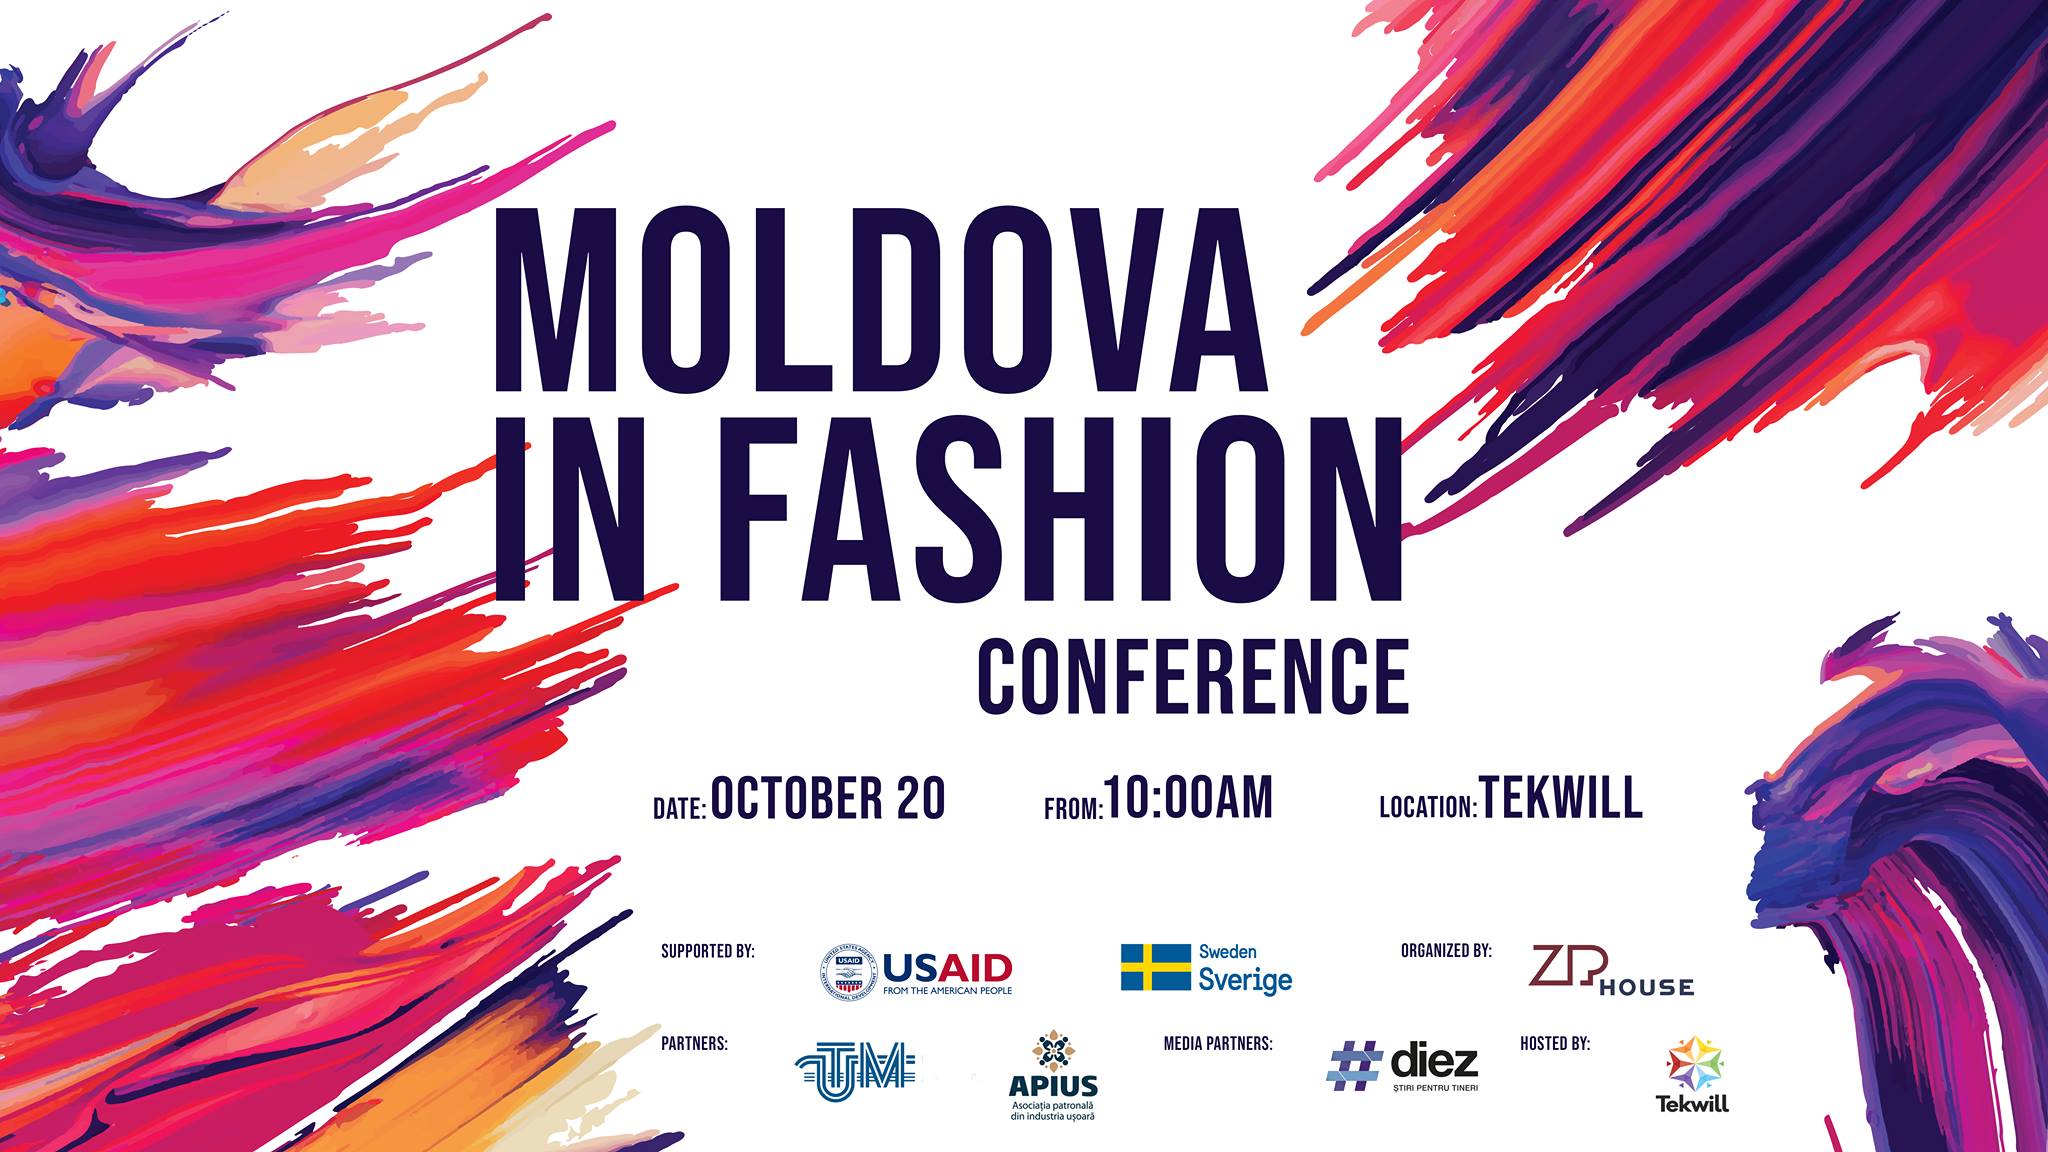 Moldova-in-Fashion-Conference